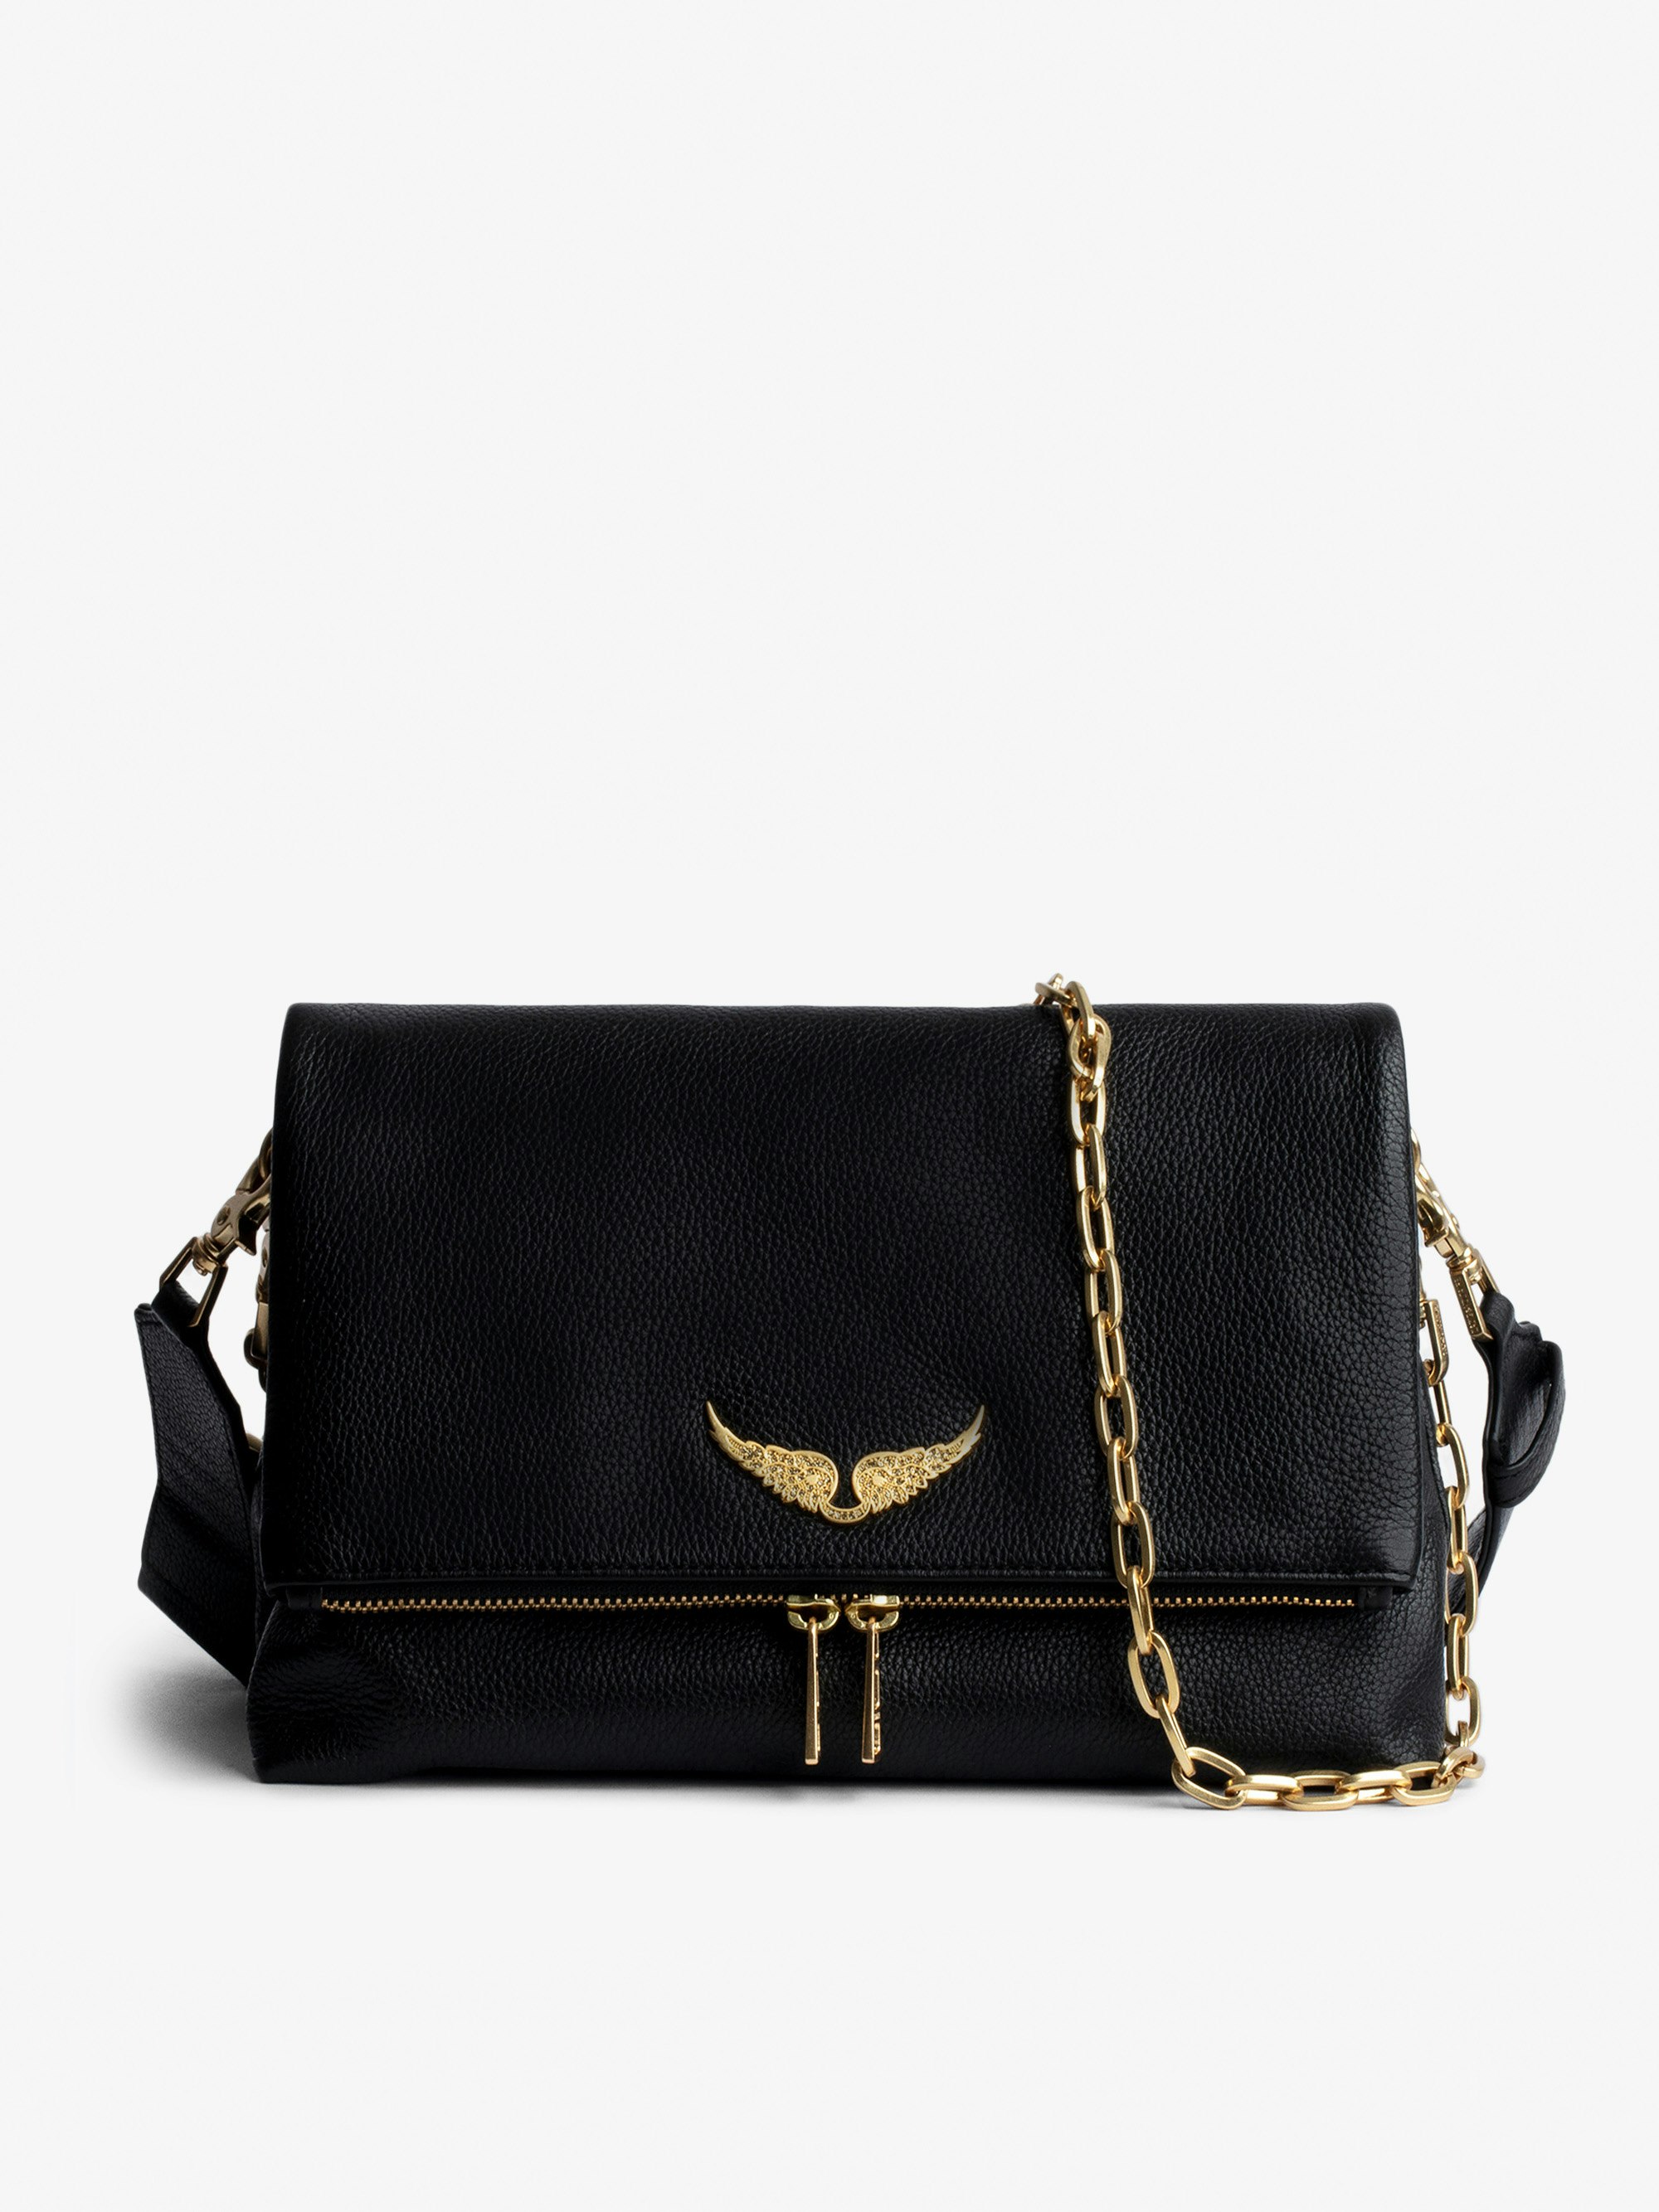 Tasche Rocky - Damentasche aus schwarzem genarbtem Leder und goldfarbenen Ketten mit Schulterriemen